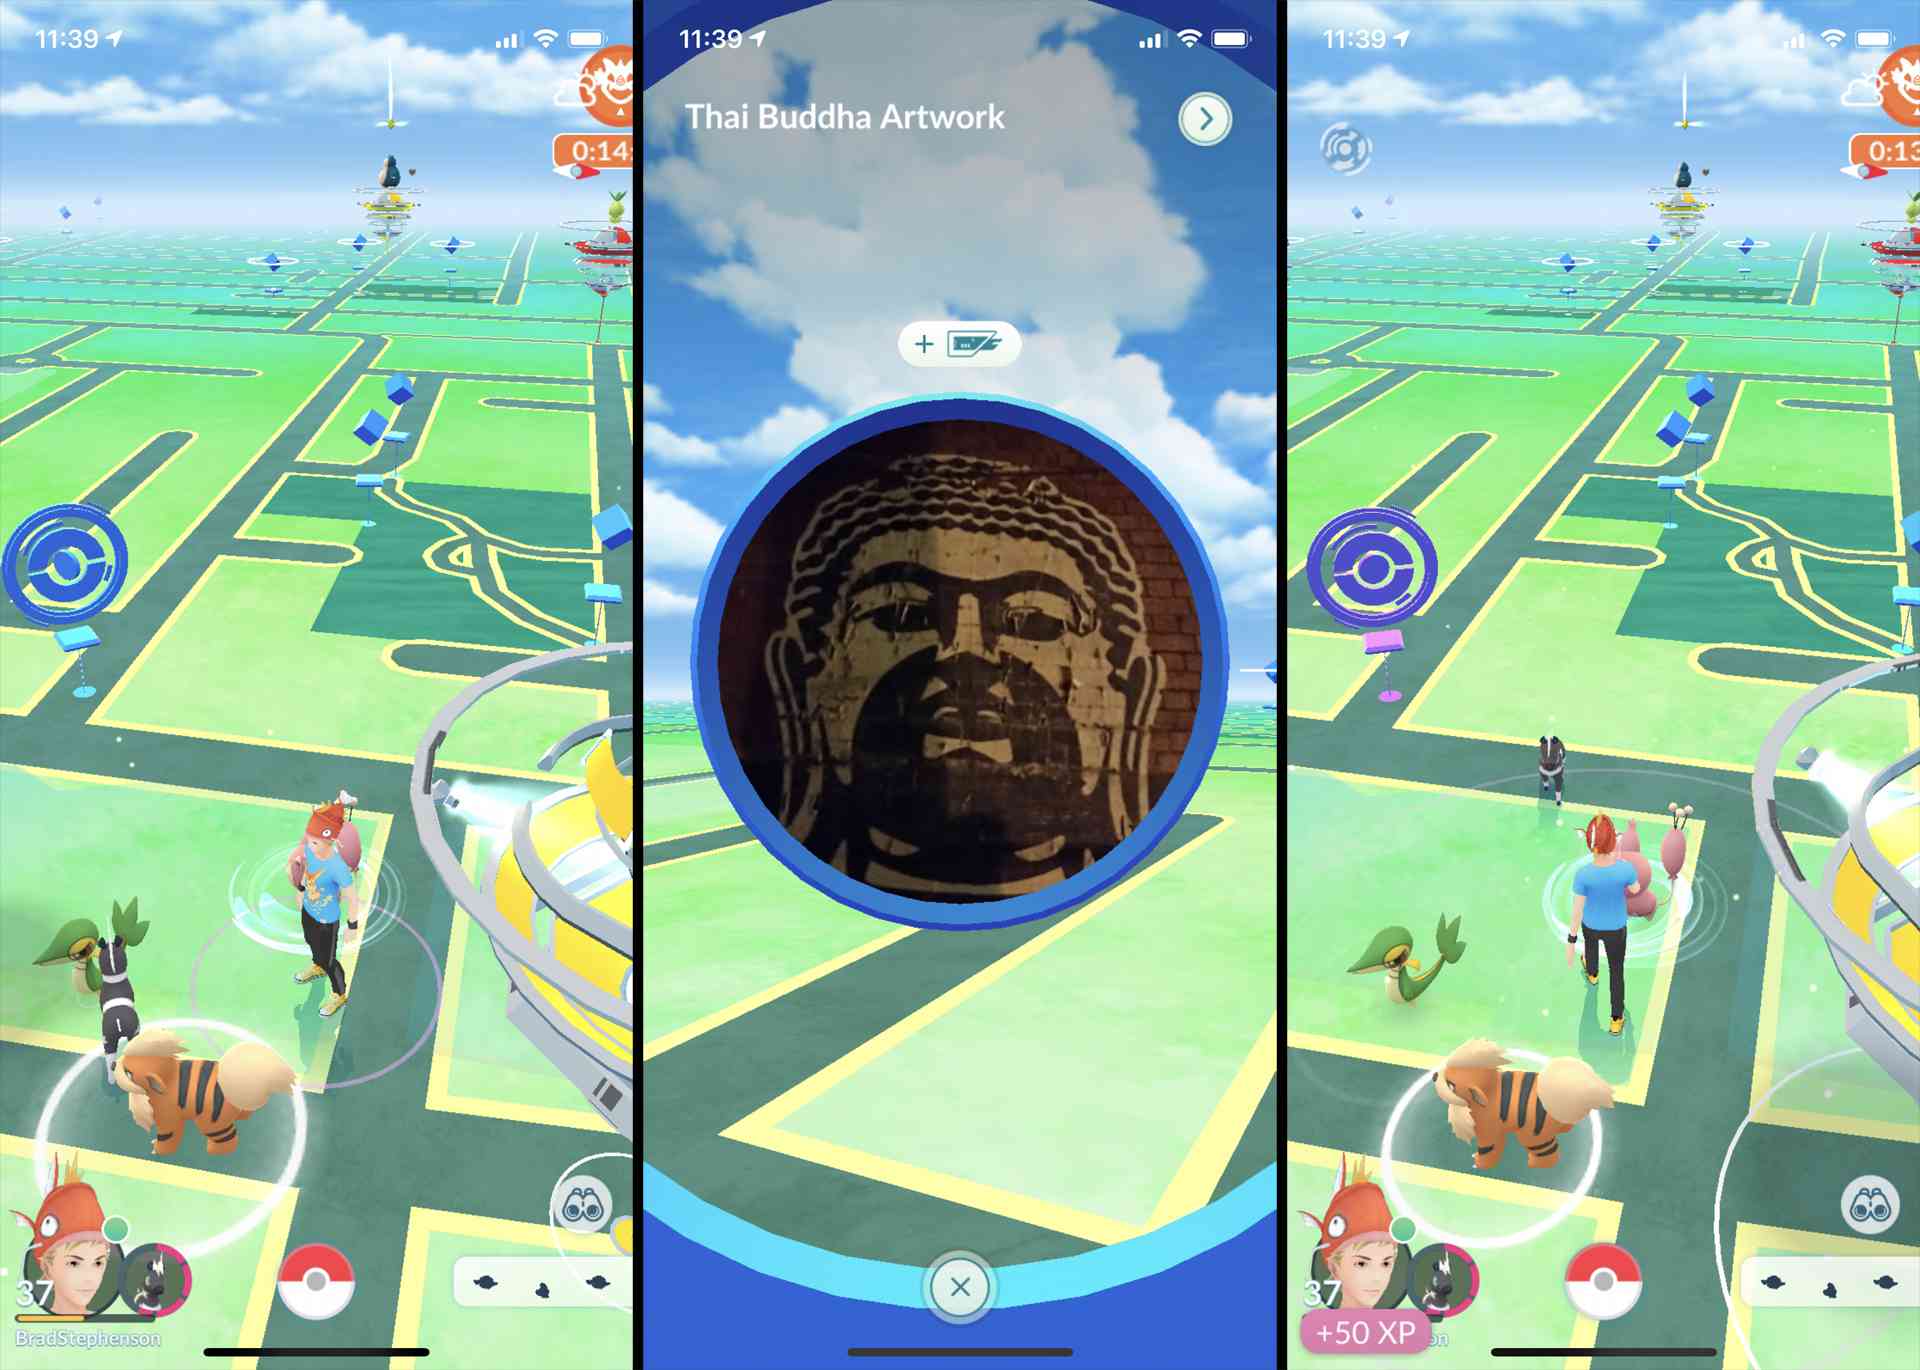 Kuvakaappaus Poke Stopista Melbournessa, Australiassa Pokemon GO -pelissä iPhonessa.